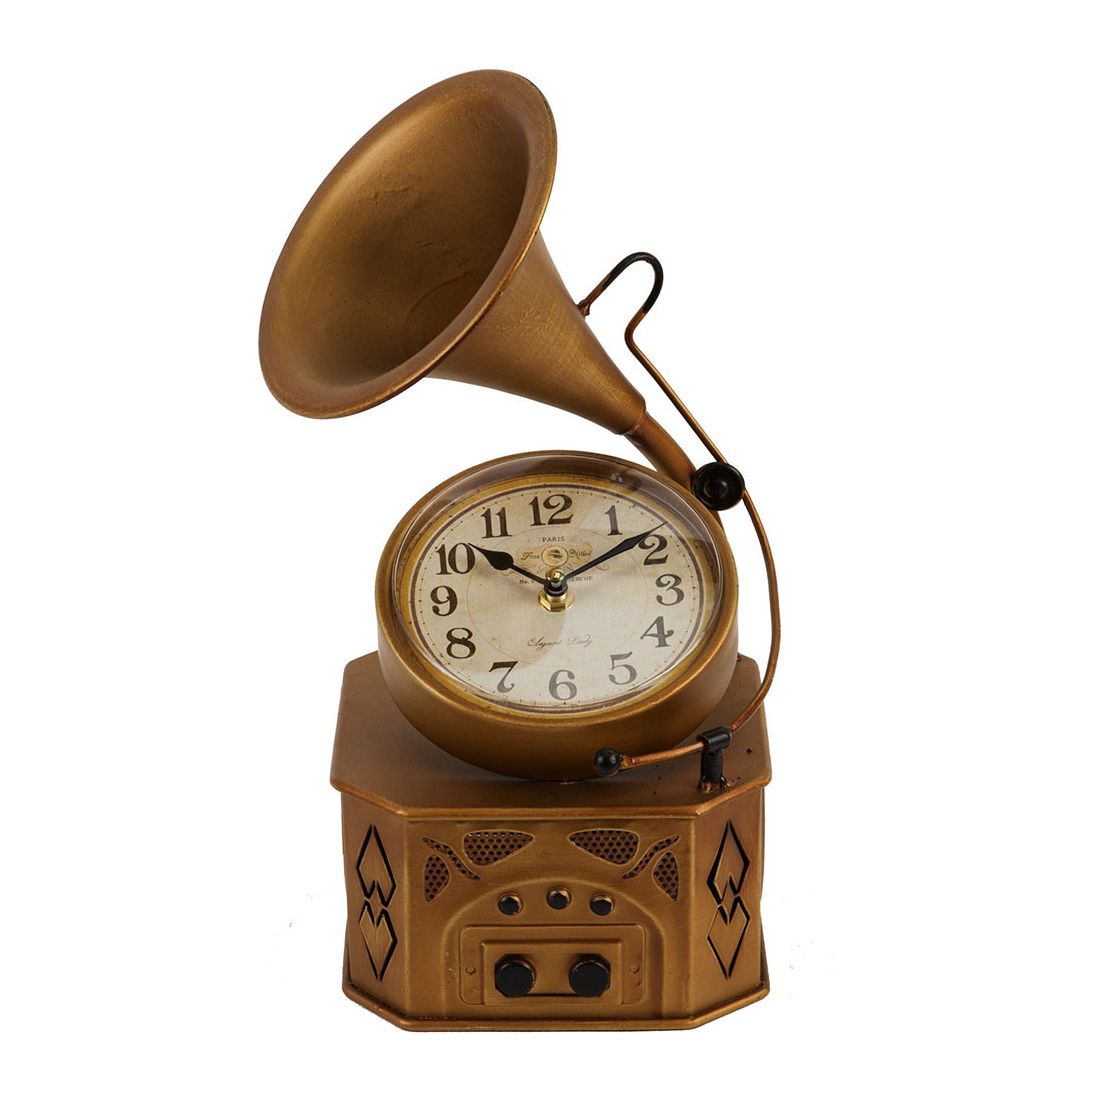 Hometime Mantel Gramophone Clock